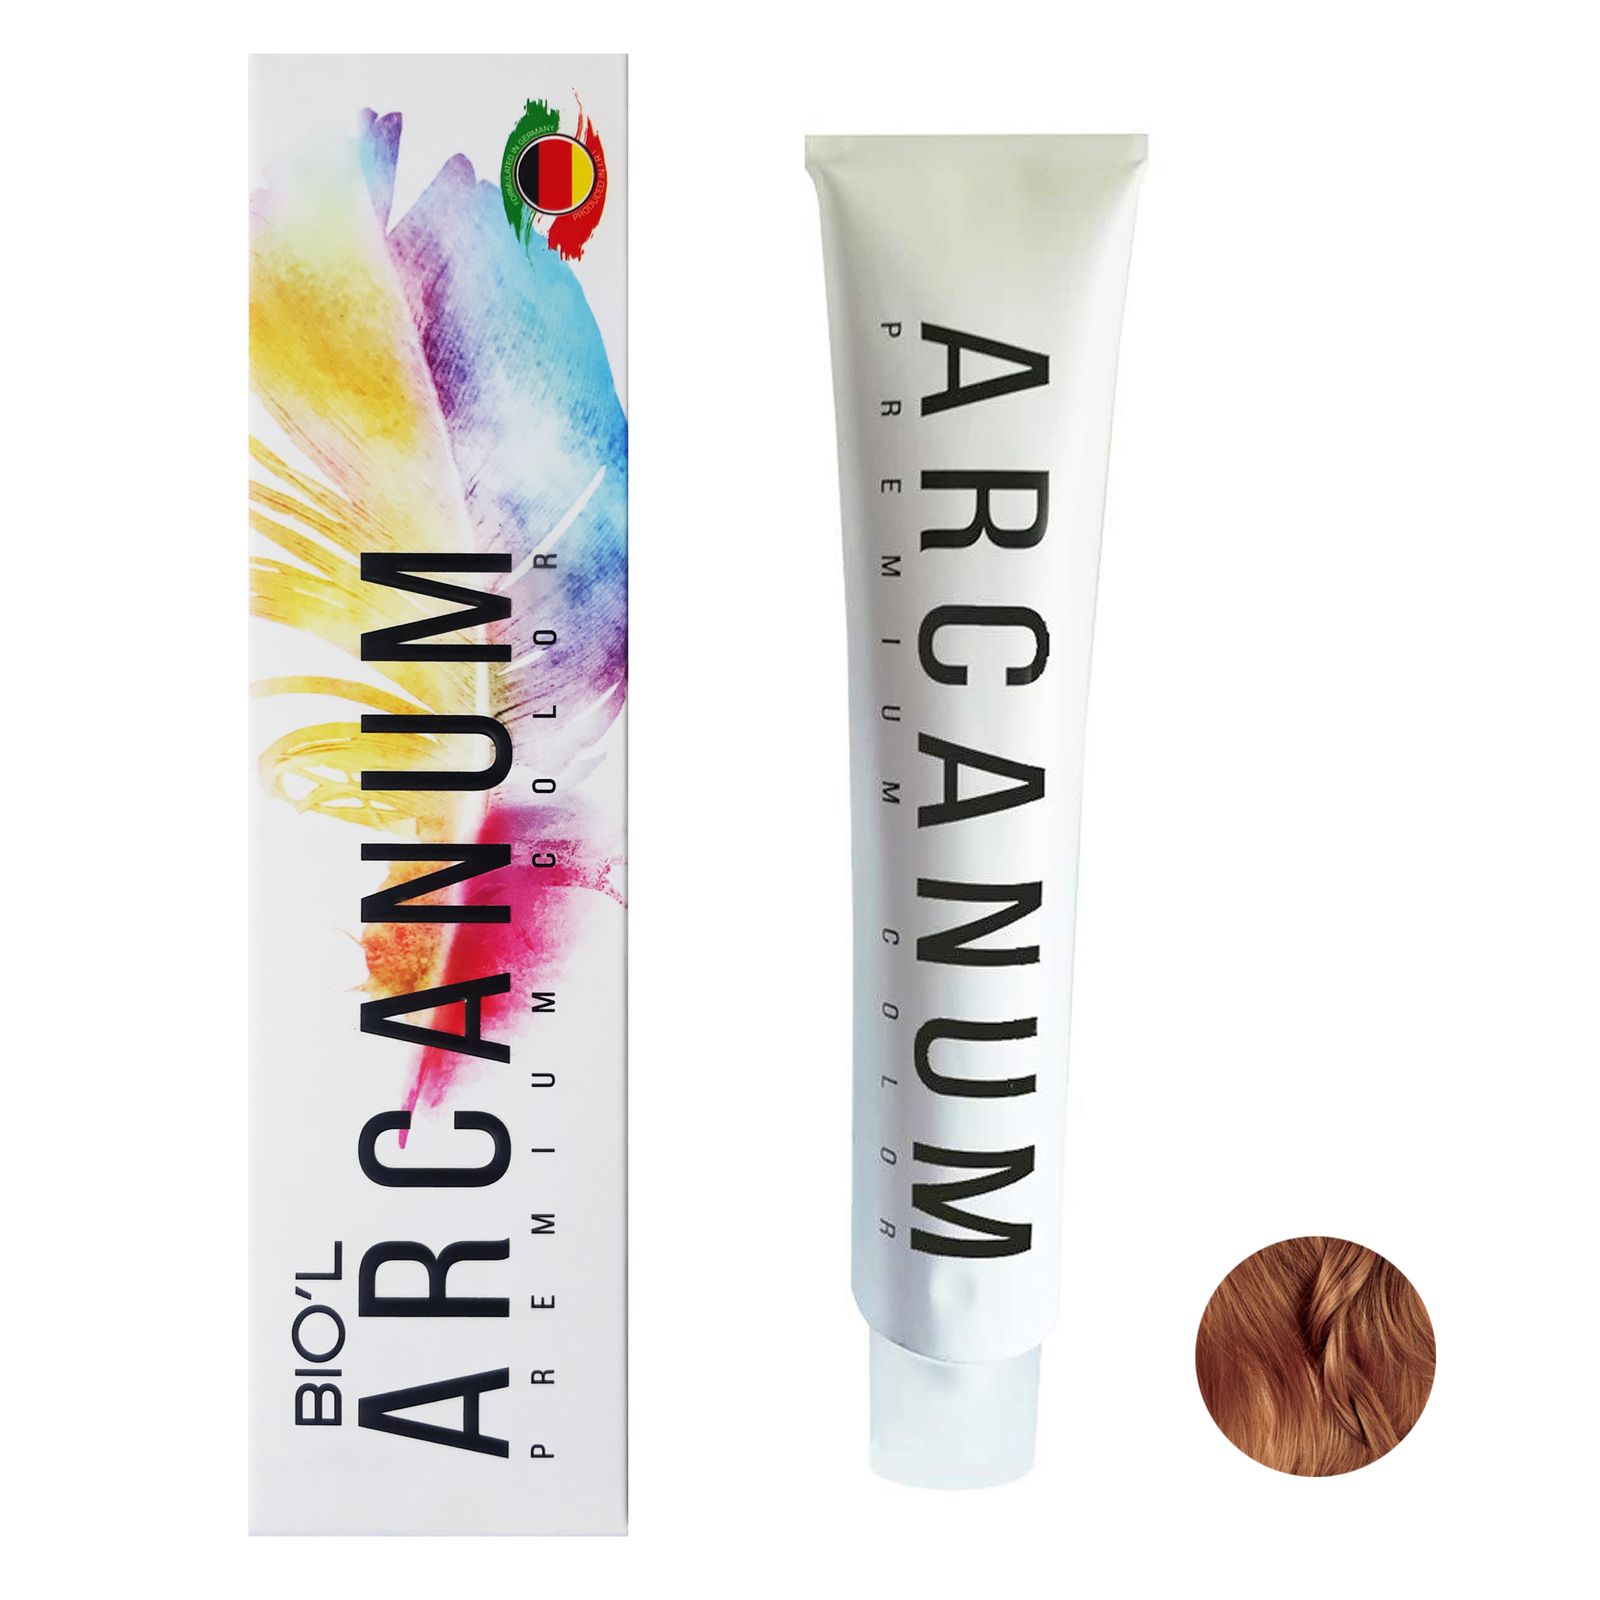  رنگ مو بیول مدل Arcanum شماره 6.81 حجم 120 میلی لیتر رنگ بلوند شکلاتی تیره -  - 1